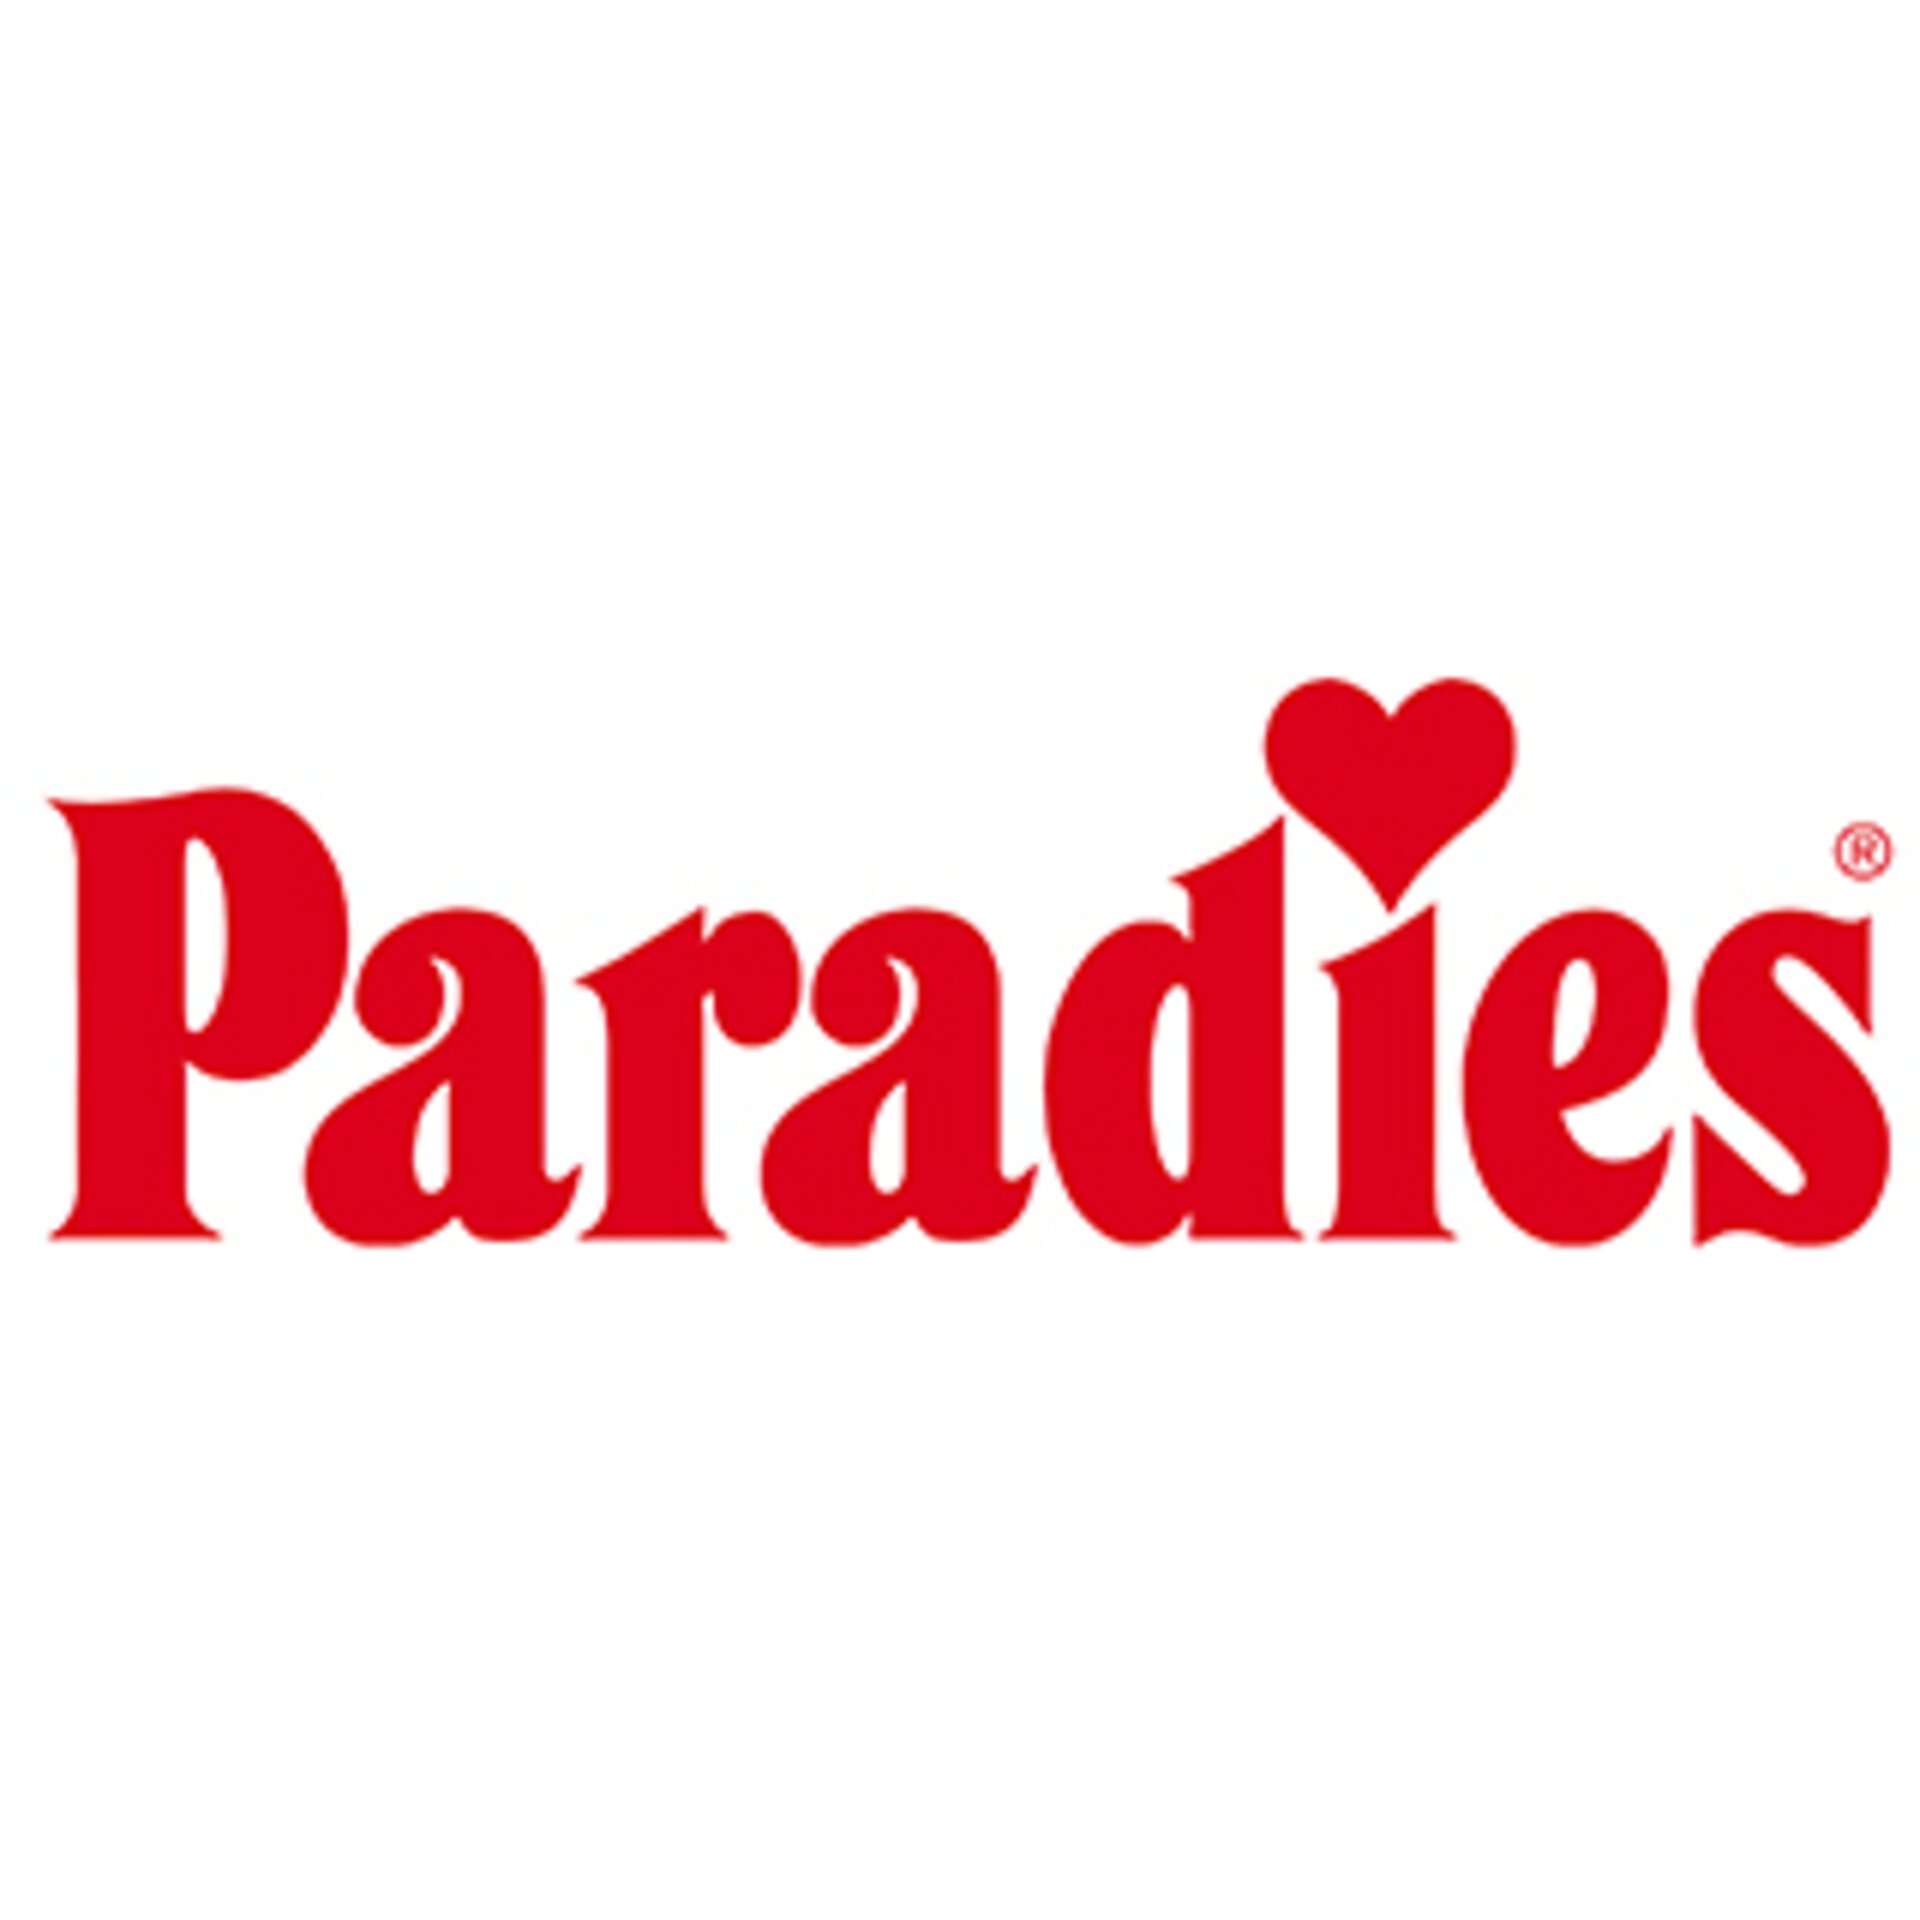 Paradies Logo